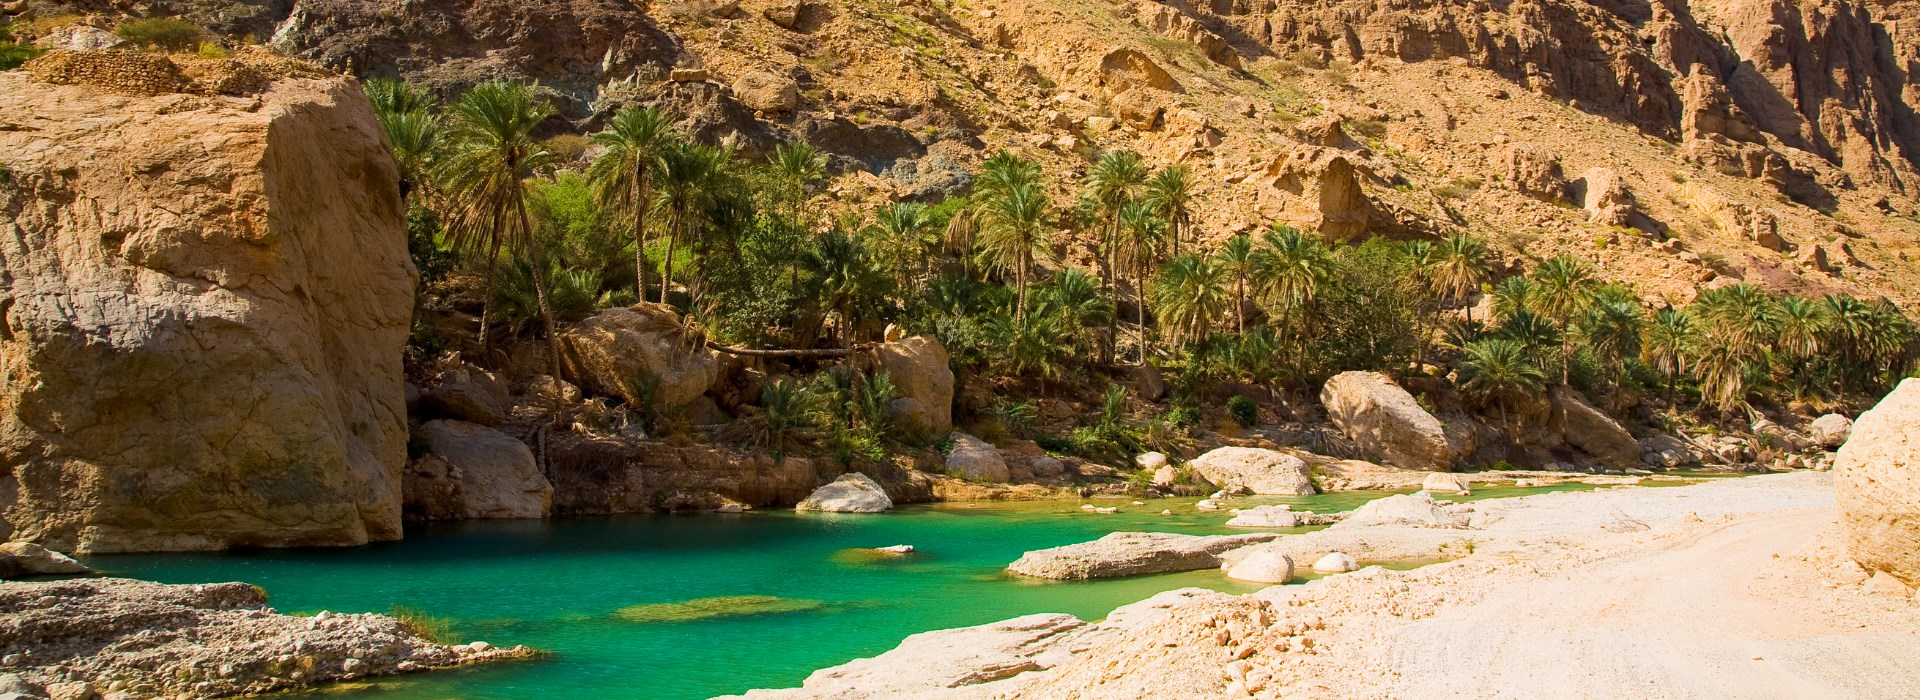 Visiter Le village de Tiwi - Oman